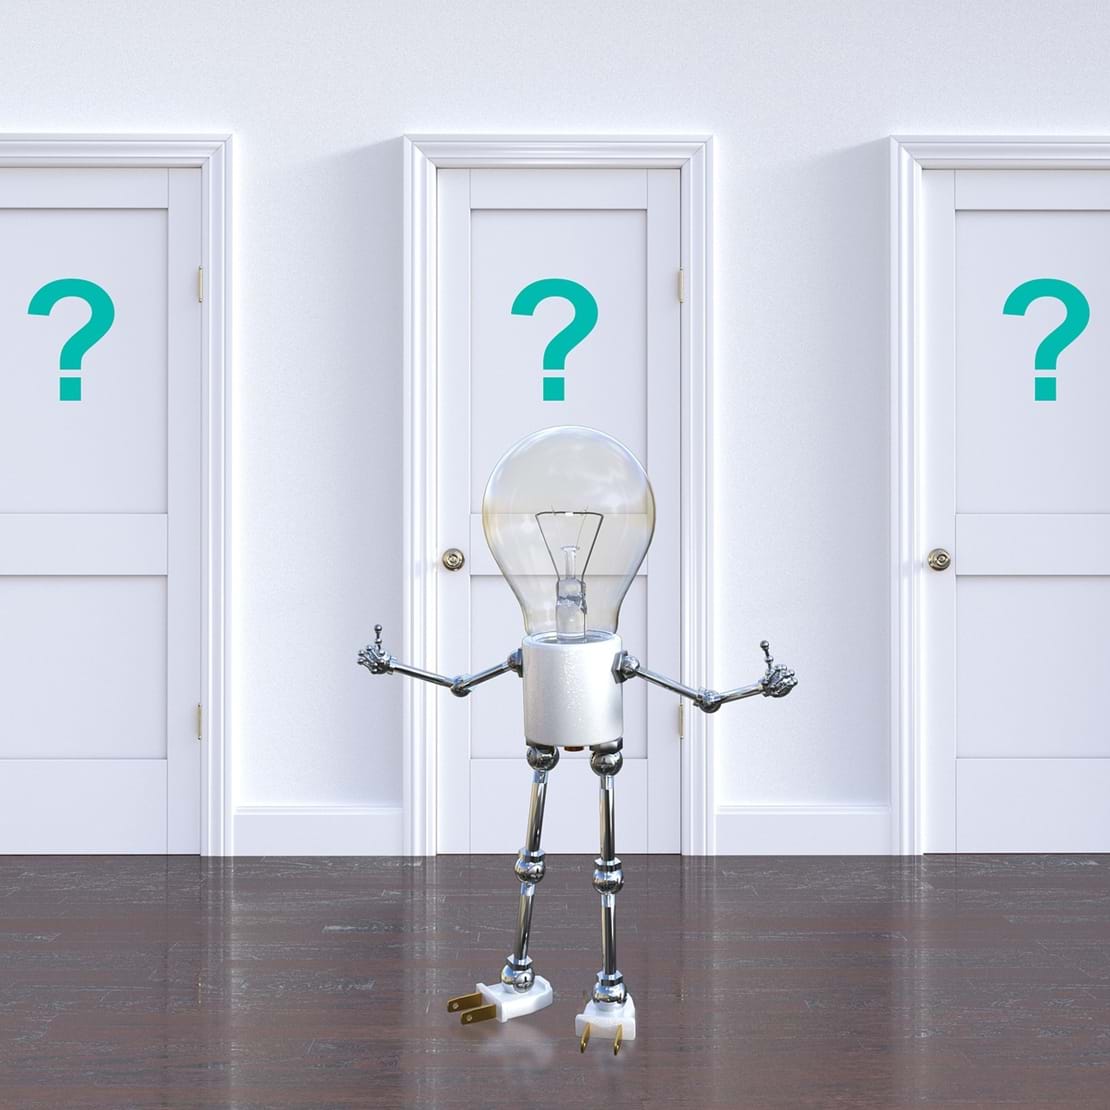 En lille robot med elpære som hoved, står foran tre døre med spørgsmålstegn på.